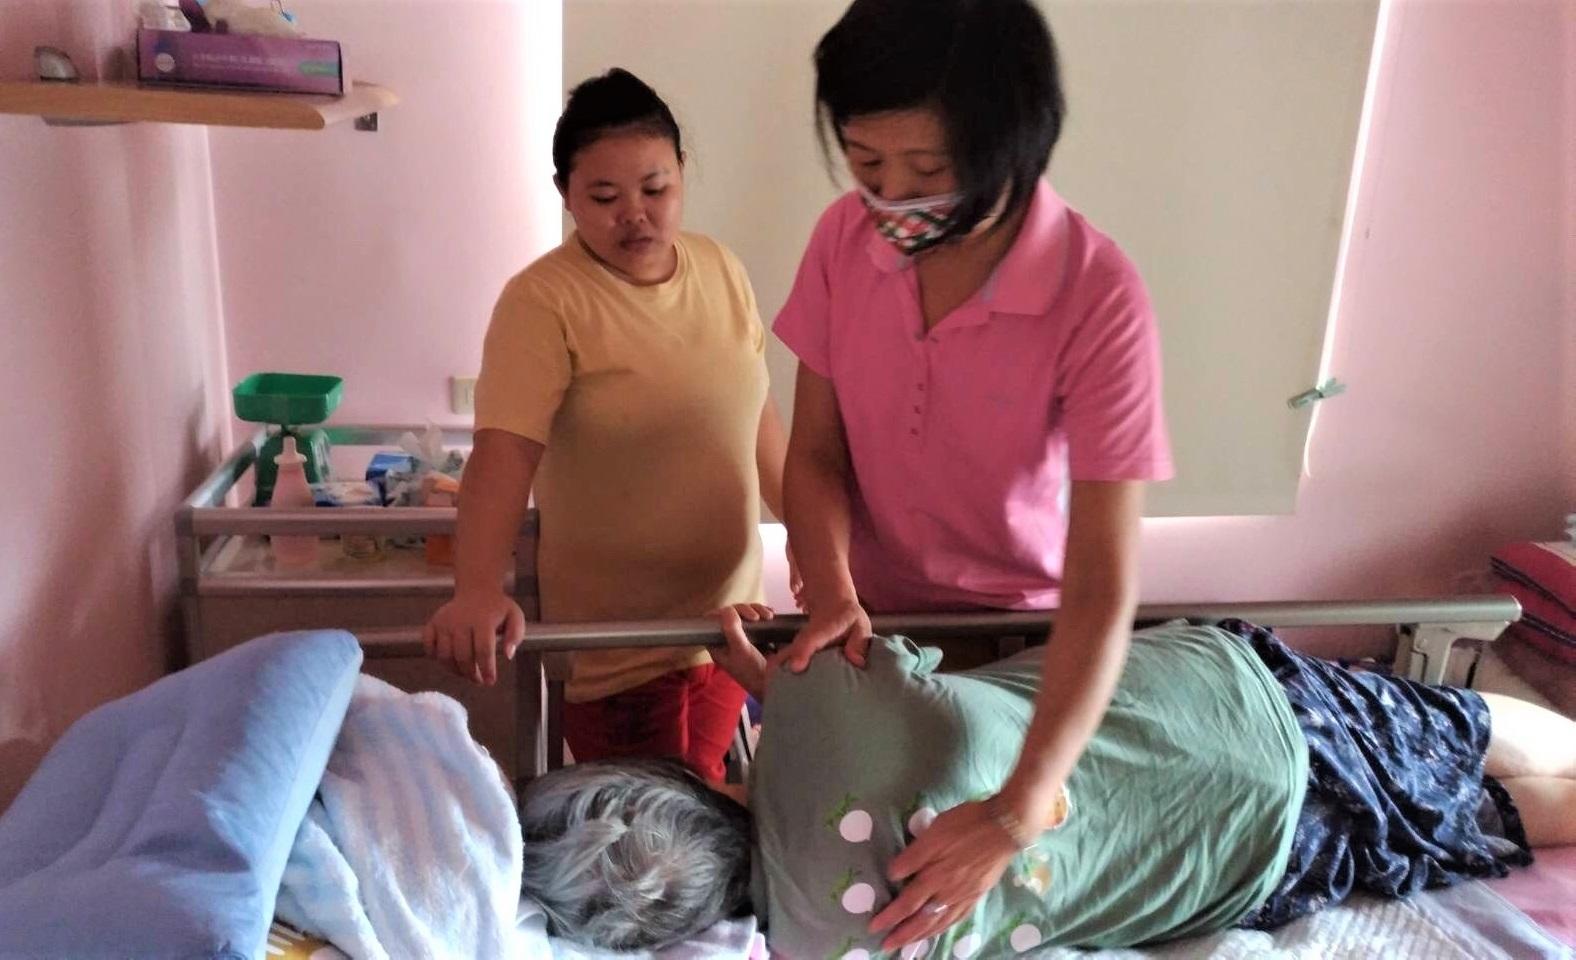 Cục Lao động TP. Đài Bắc sắp xếp nhân viên  chăm sóc chuyên nghiệp cùng thông dịch viên, đến tận nhà hướng dẫn các kĩ năng chăm sóc người bệnh cho khán hộ công nước ngoài. (Ảnh: Chính quyền TP. Tân Bắc cung cấp)